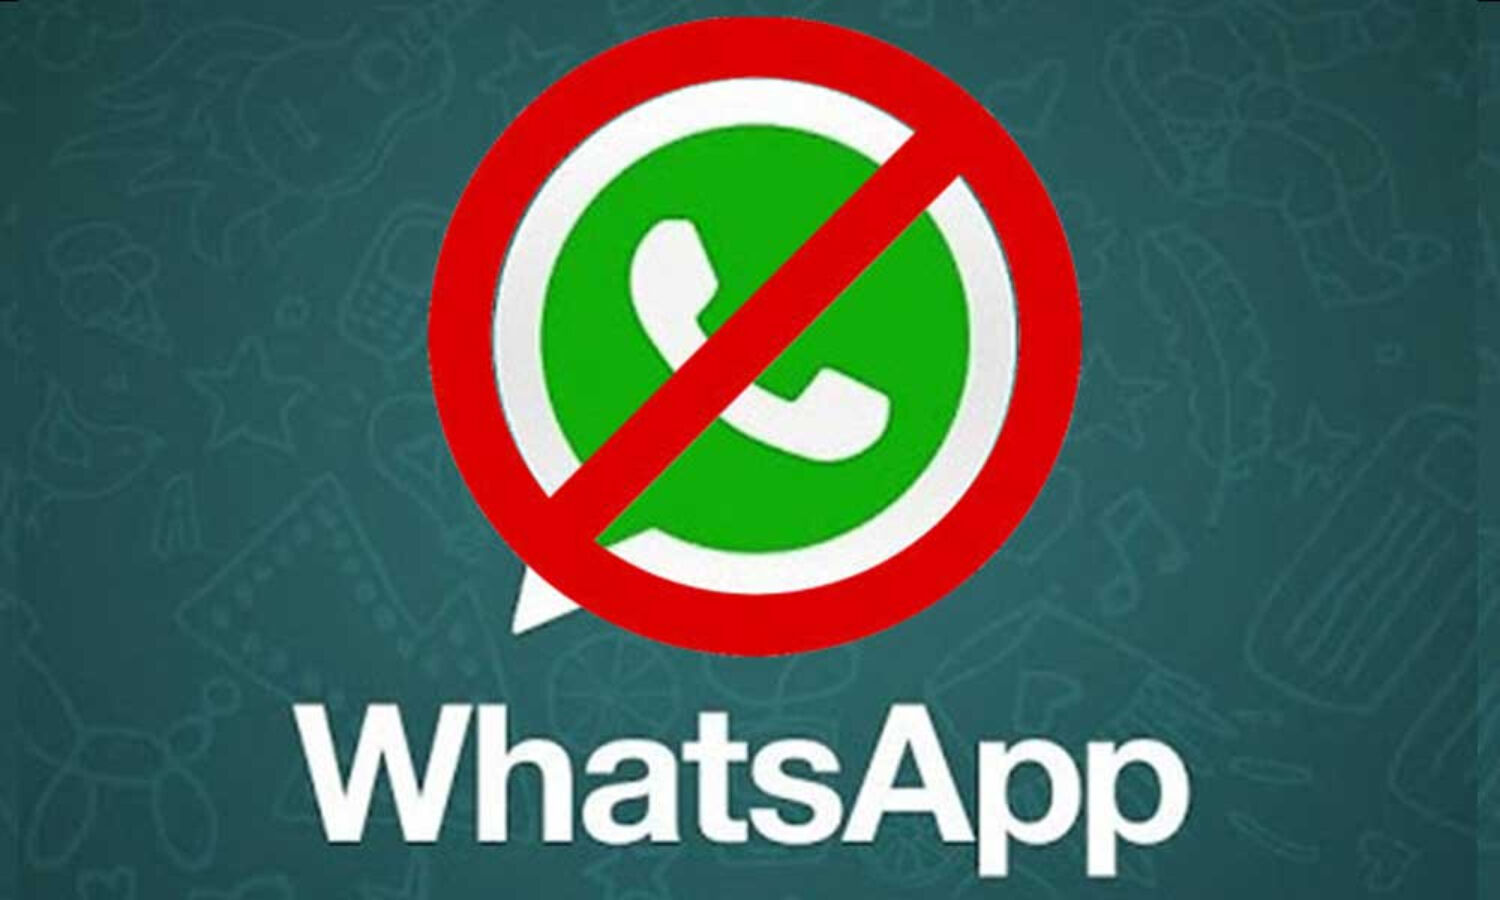 WhatsApp ने 18 लाख से ज्यादा भारतीय खातों पर लगाया प्रतिबंध, बताई ये वजह